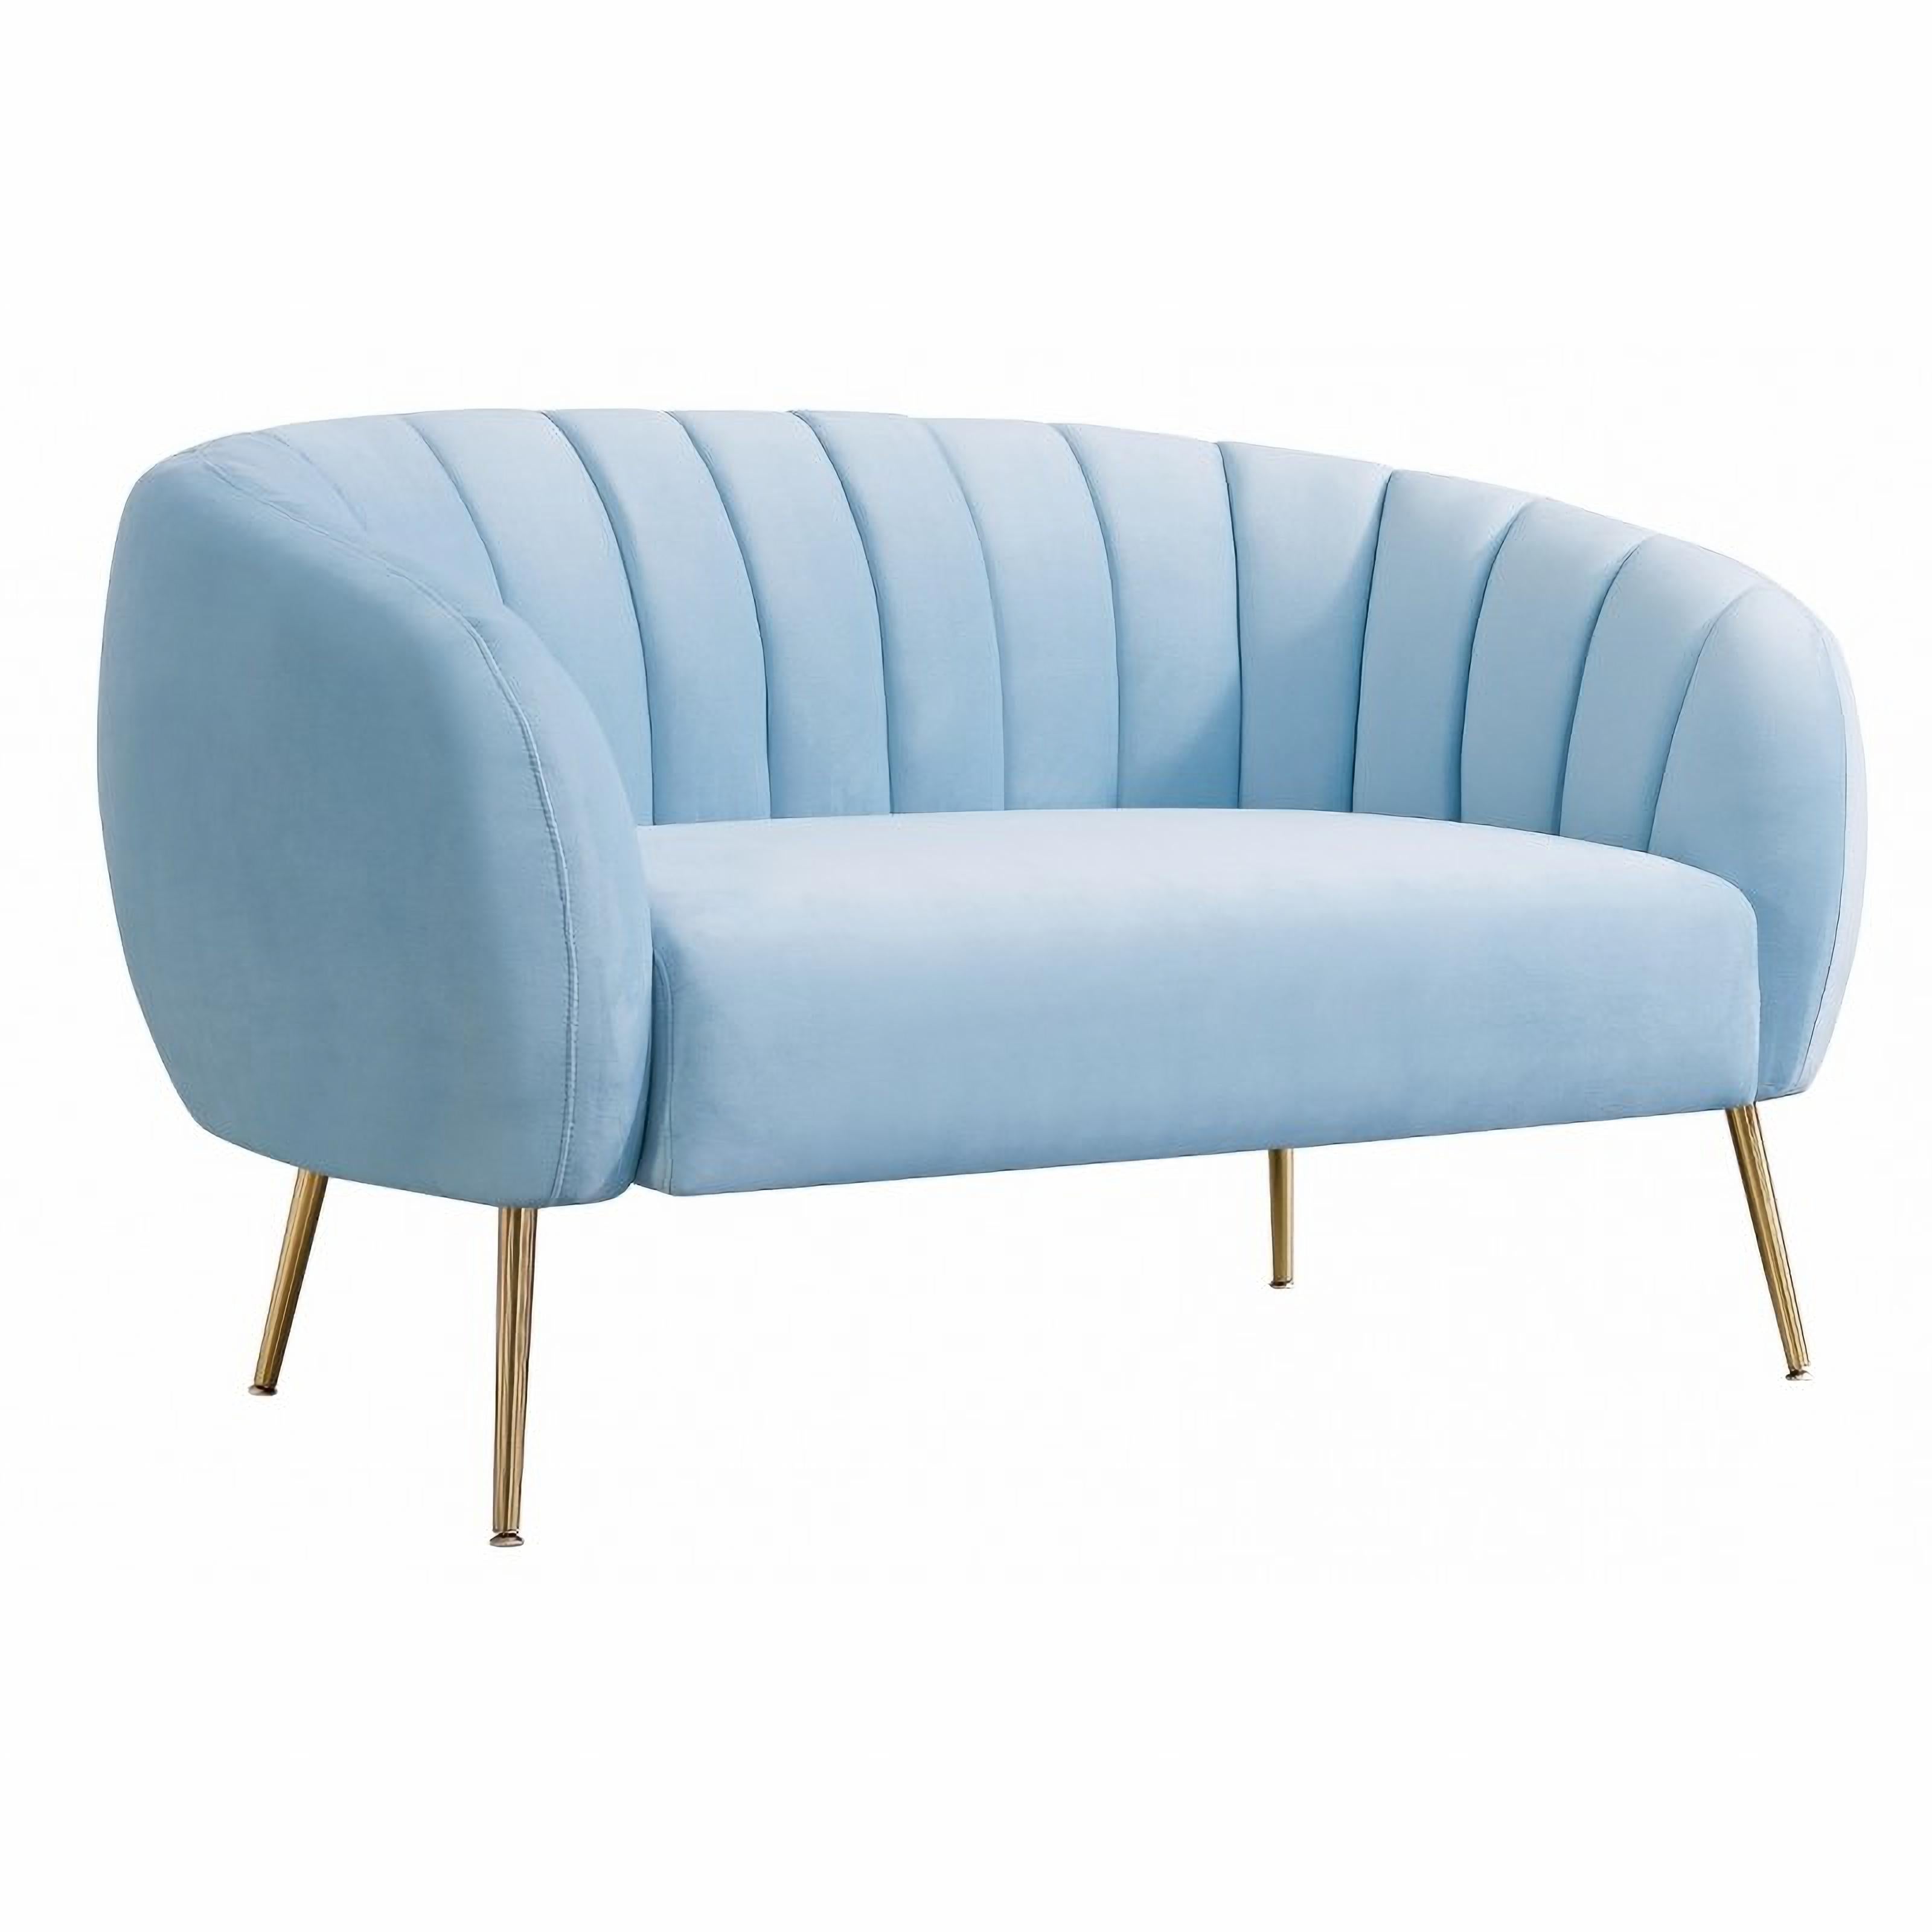 Spanish Light Blue Velvet Upholstered 2 Seater Sofa New For Sale